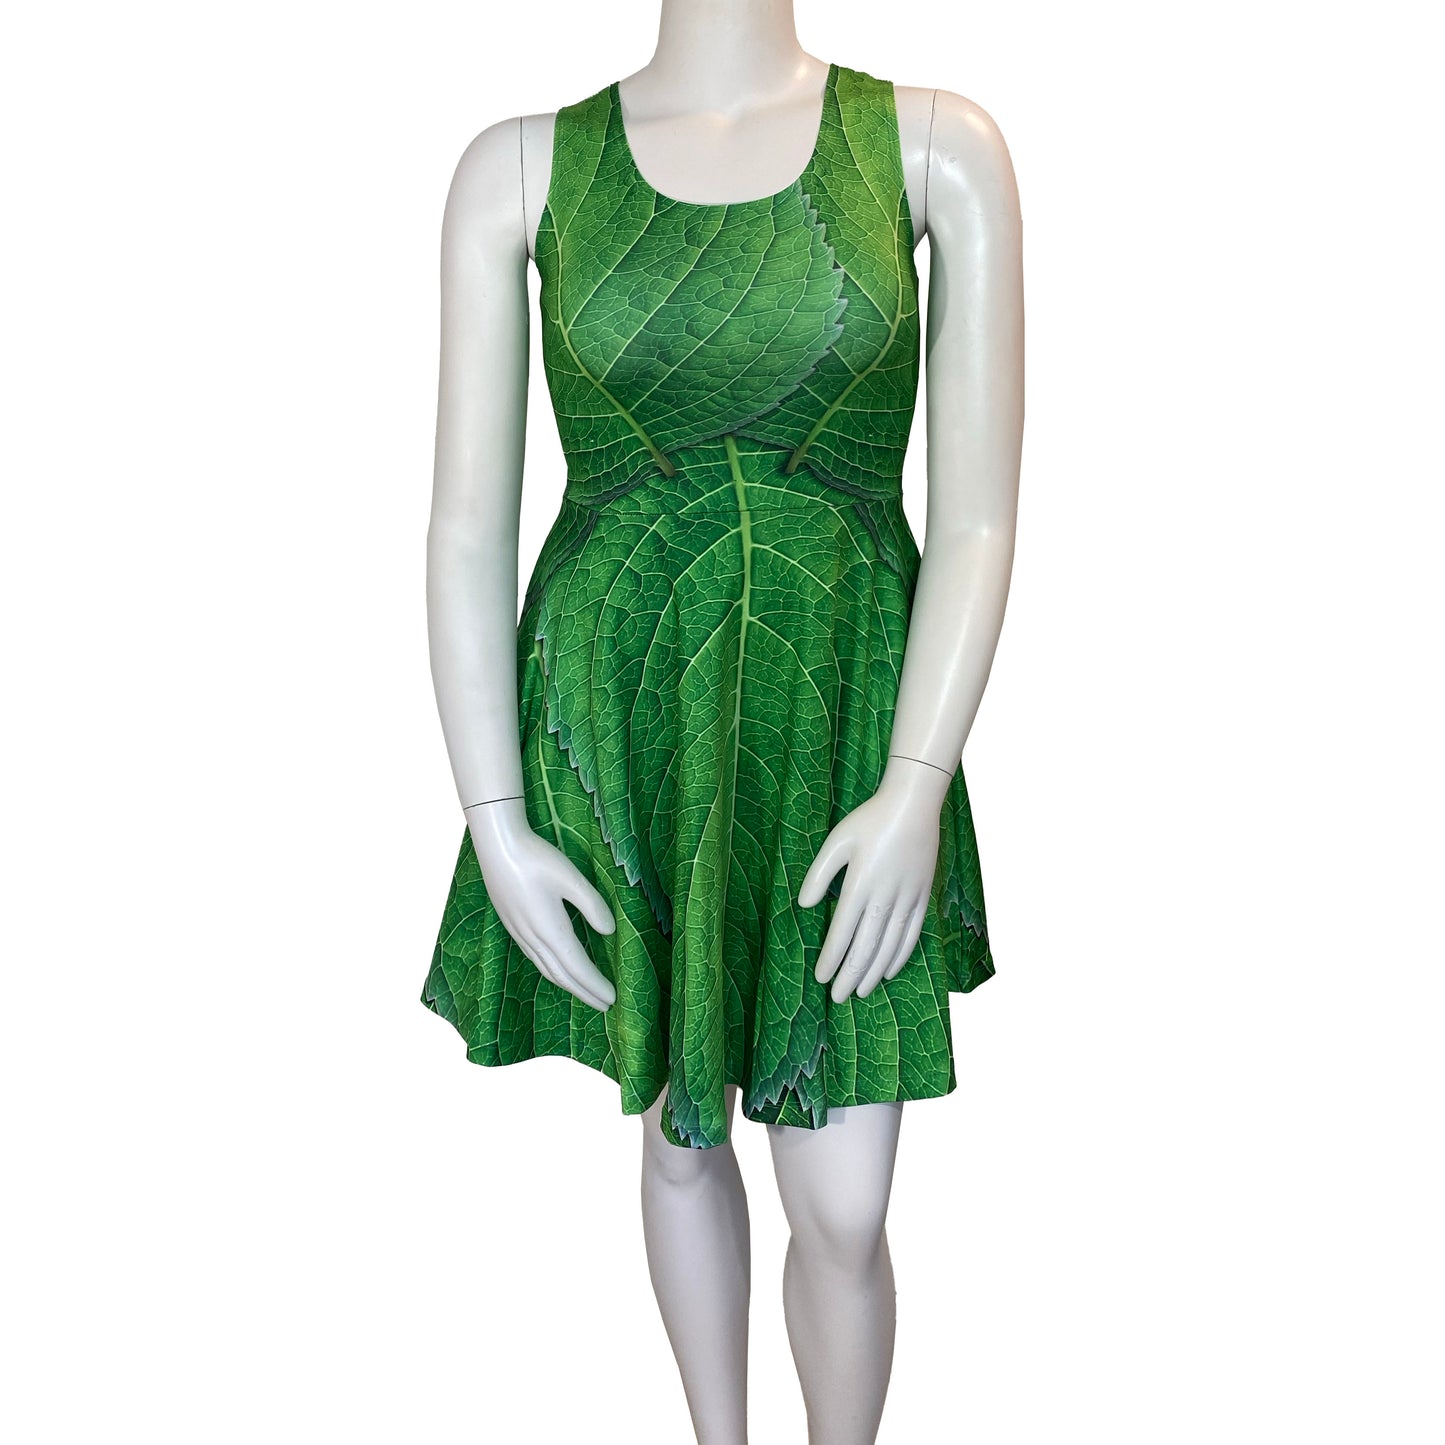 Tinker Bell Peter Pan Inspired Sleeveless Dress